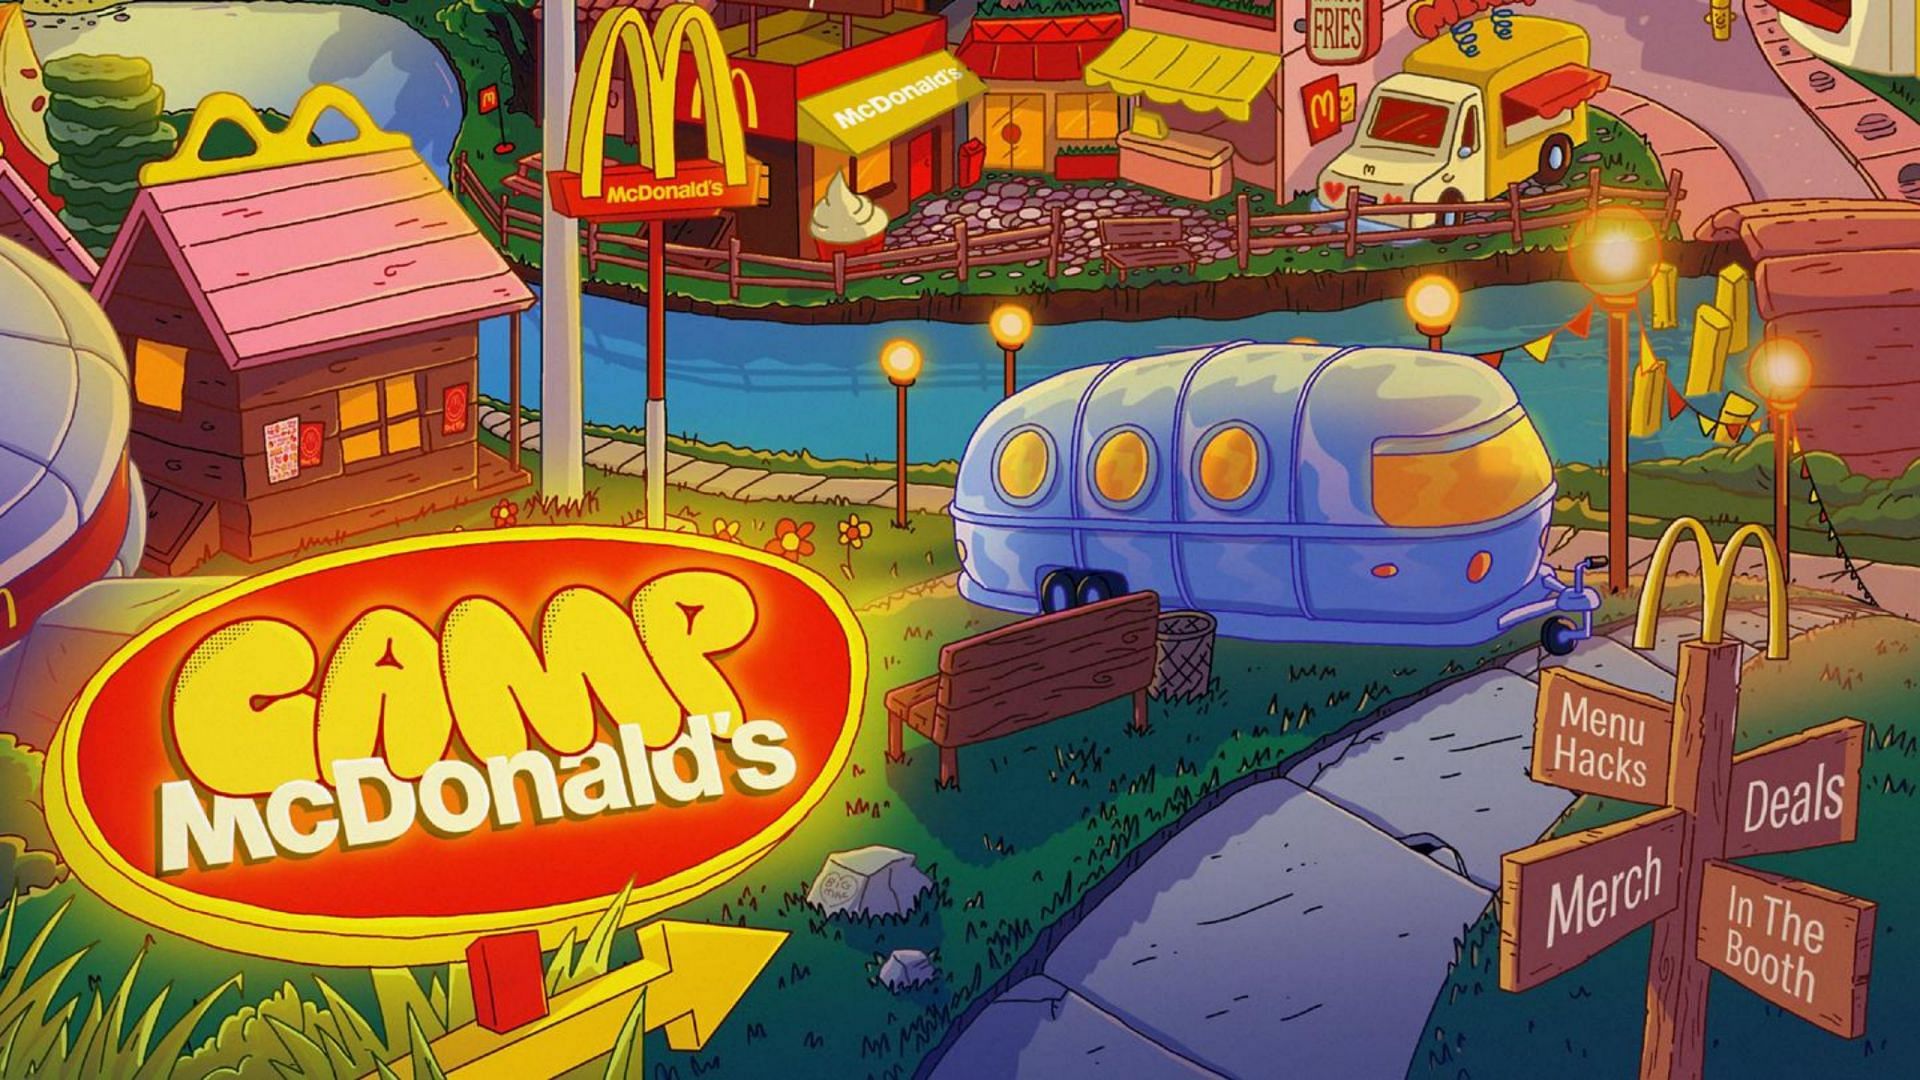 What is Camp McDonalds? Burgergiant drops deals, menu hacks, and